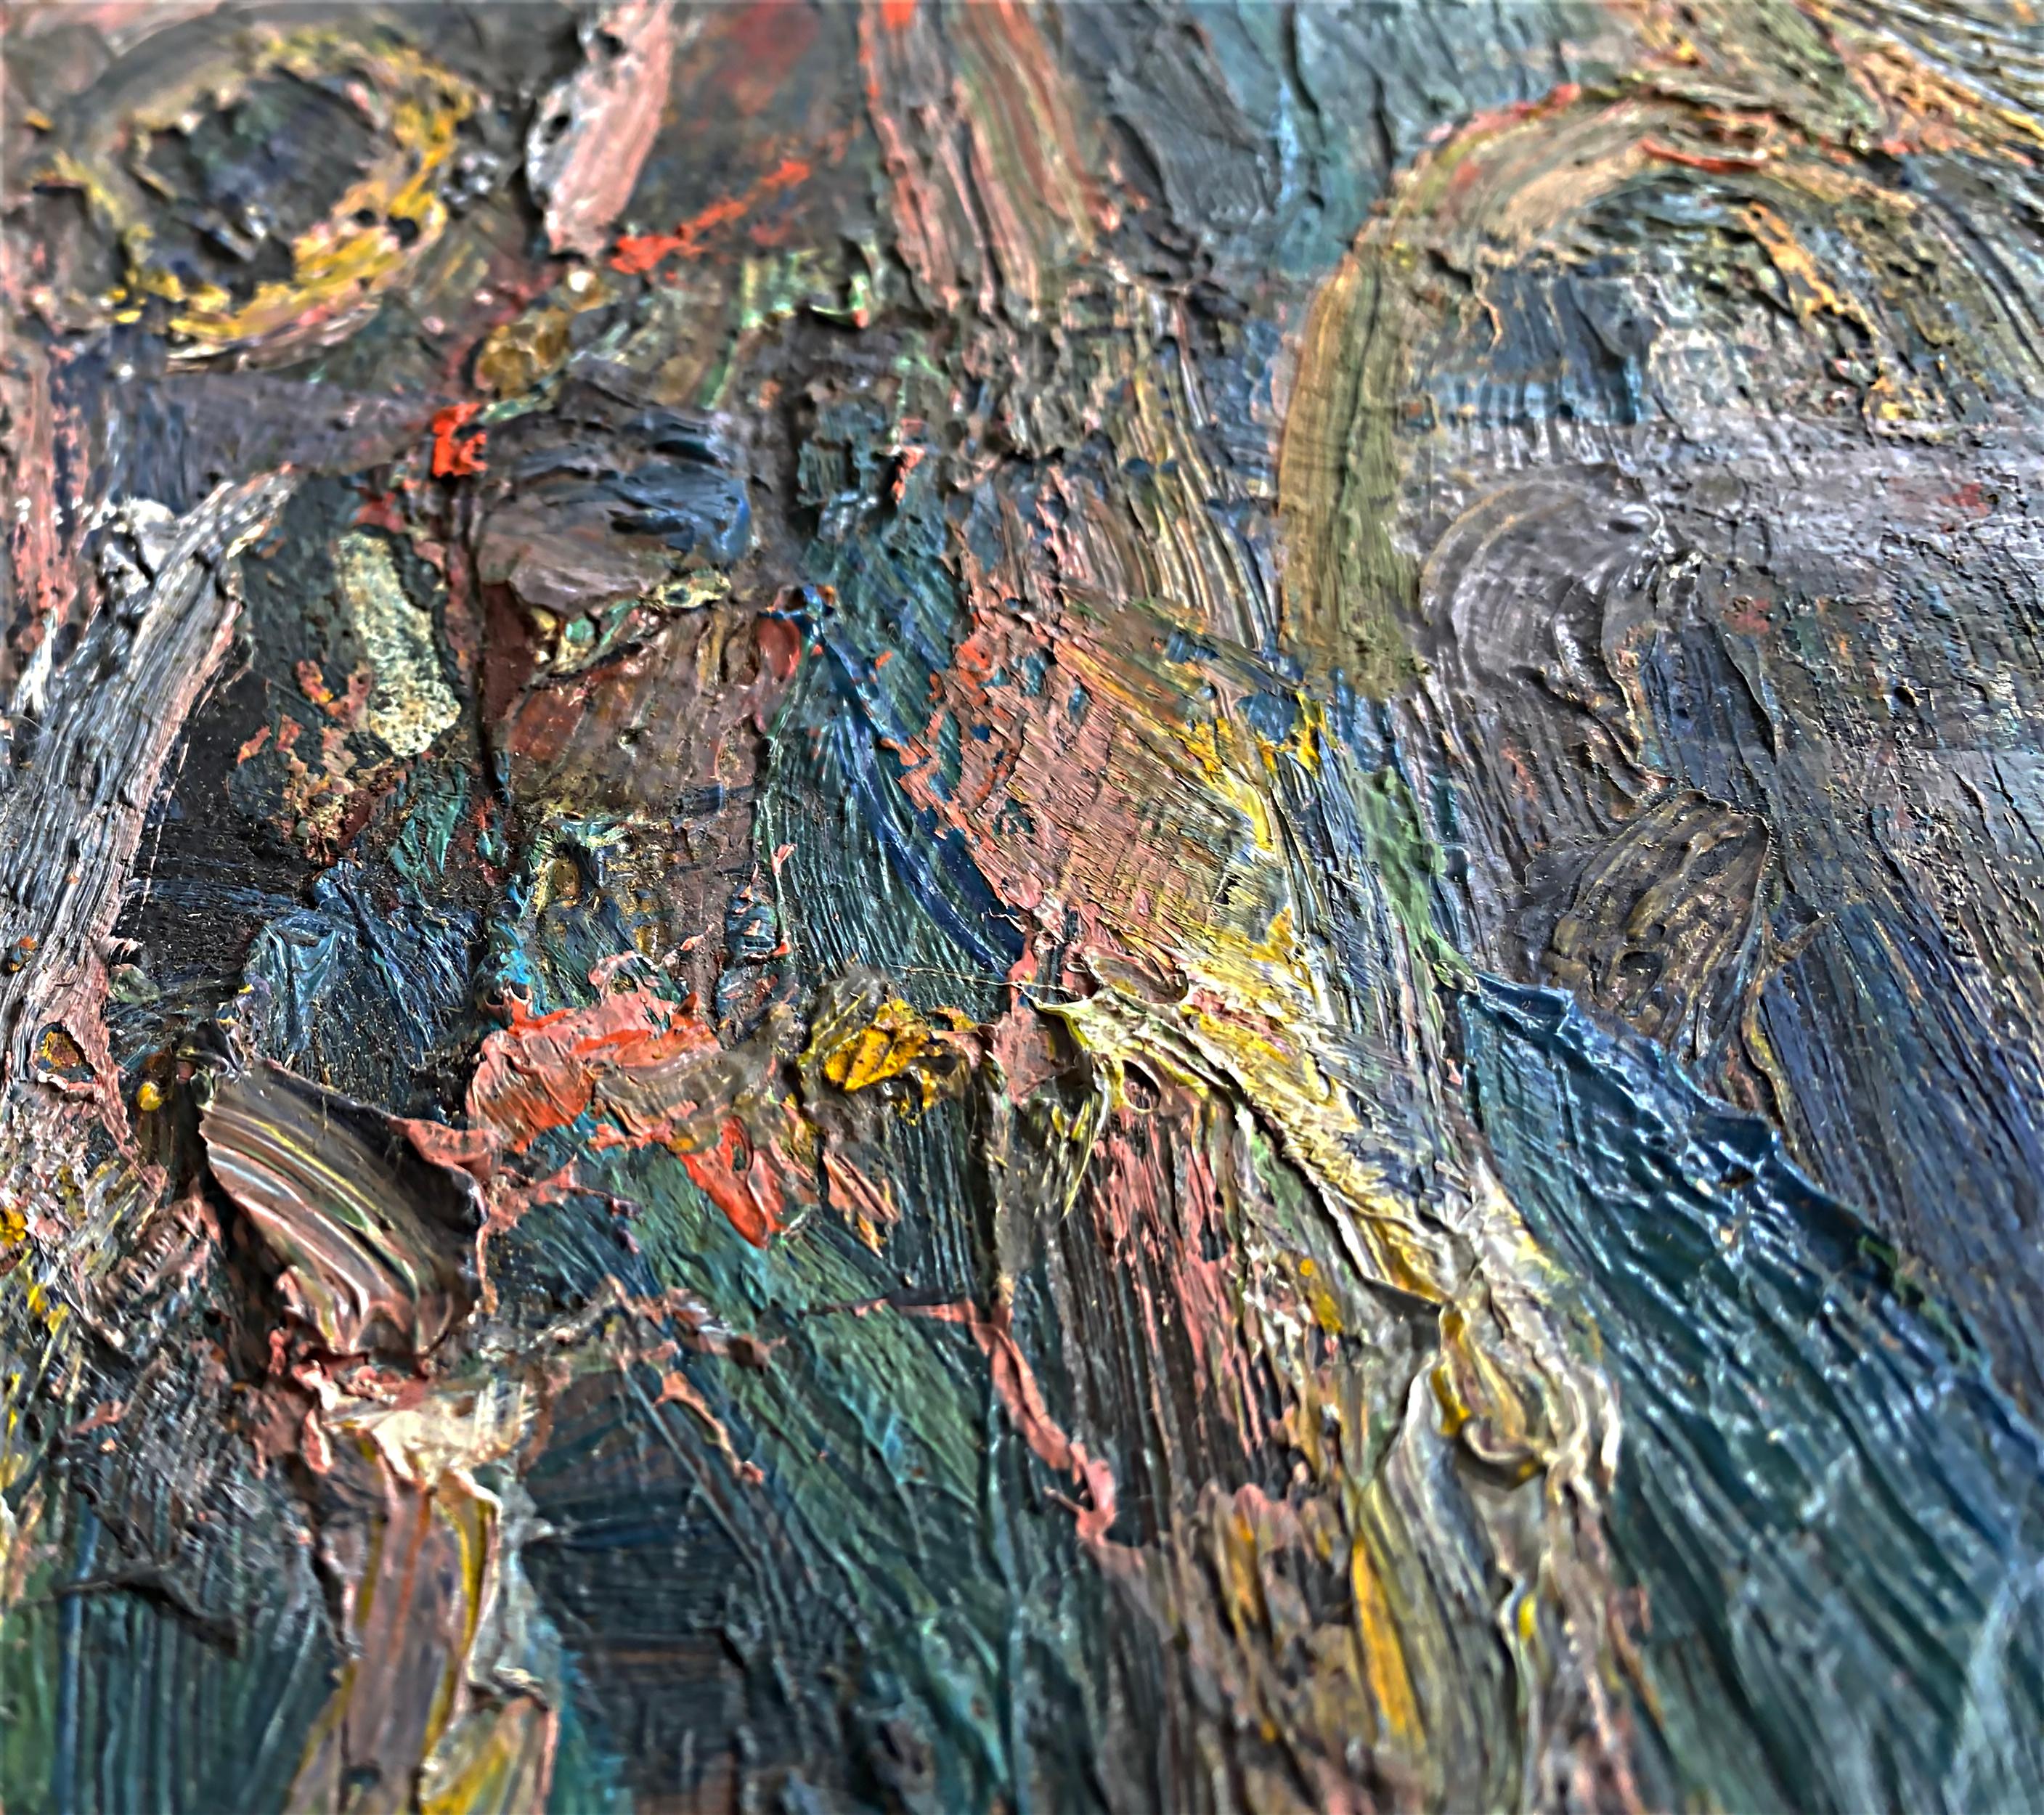 Vintage Warren Fischer figurative abstraite peinture à l'huile.
Nous proposons à la vente une peinture figurative abstraite à l'huile sur toile de l'artiste américain Warren Fischer (1943-2001). Le tableau fait partie de la succession de l'artiste.